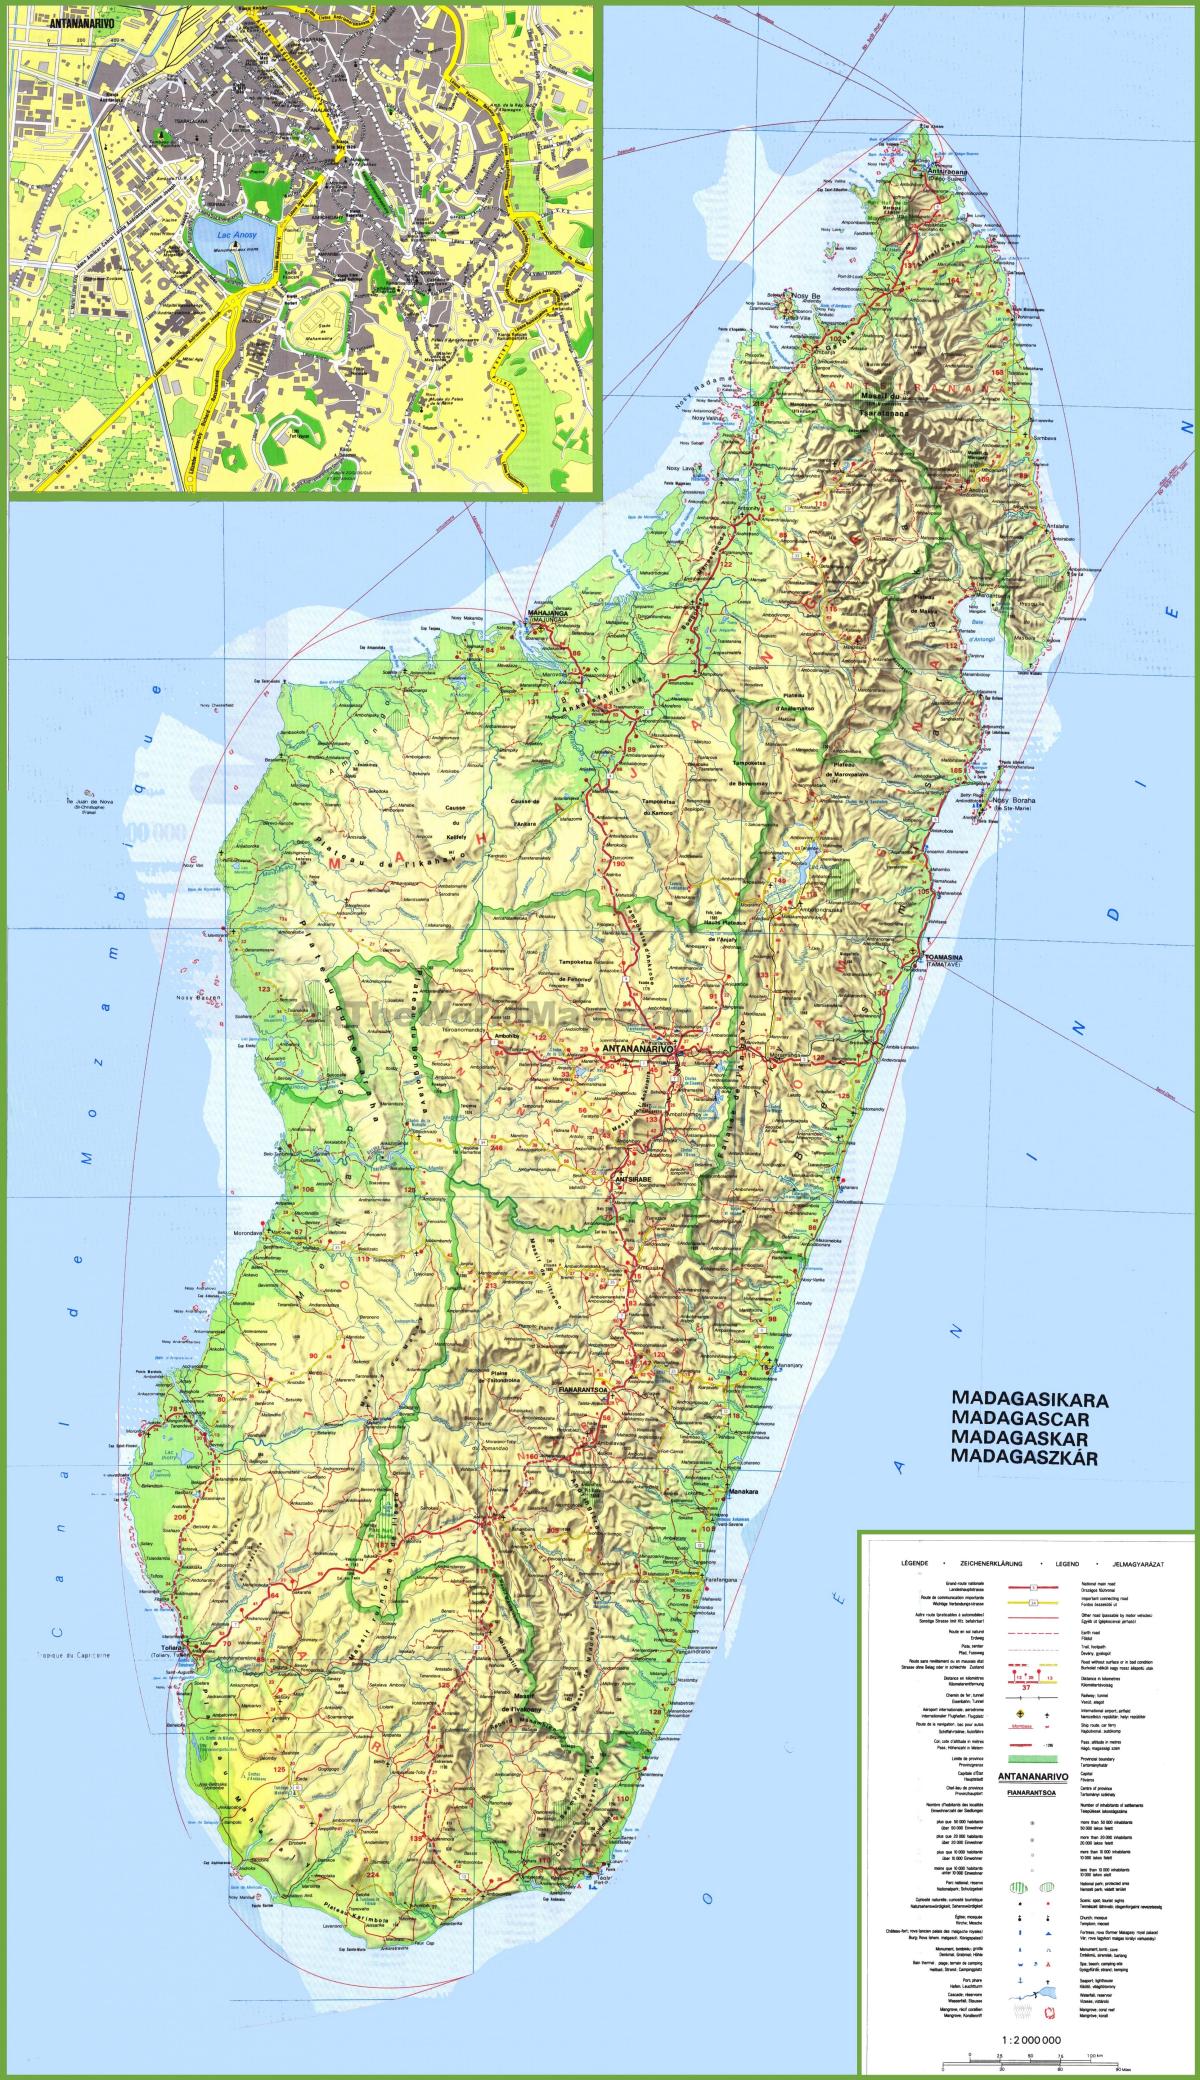 la mappa mostra Madagascar